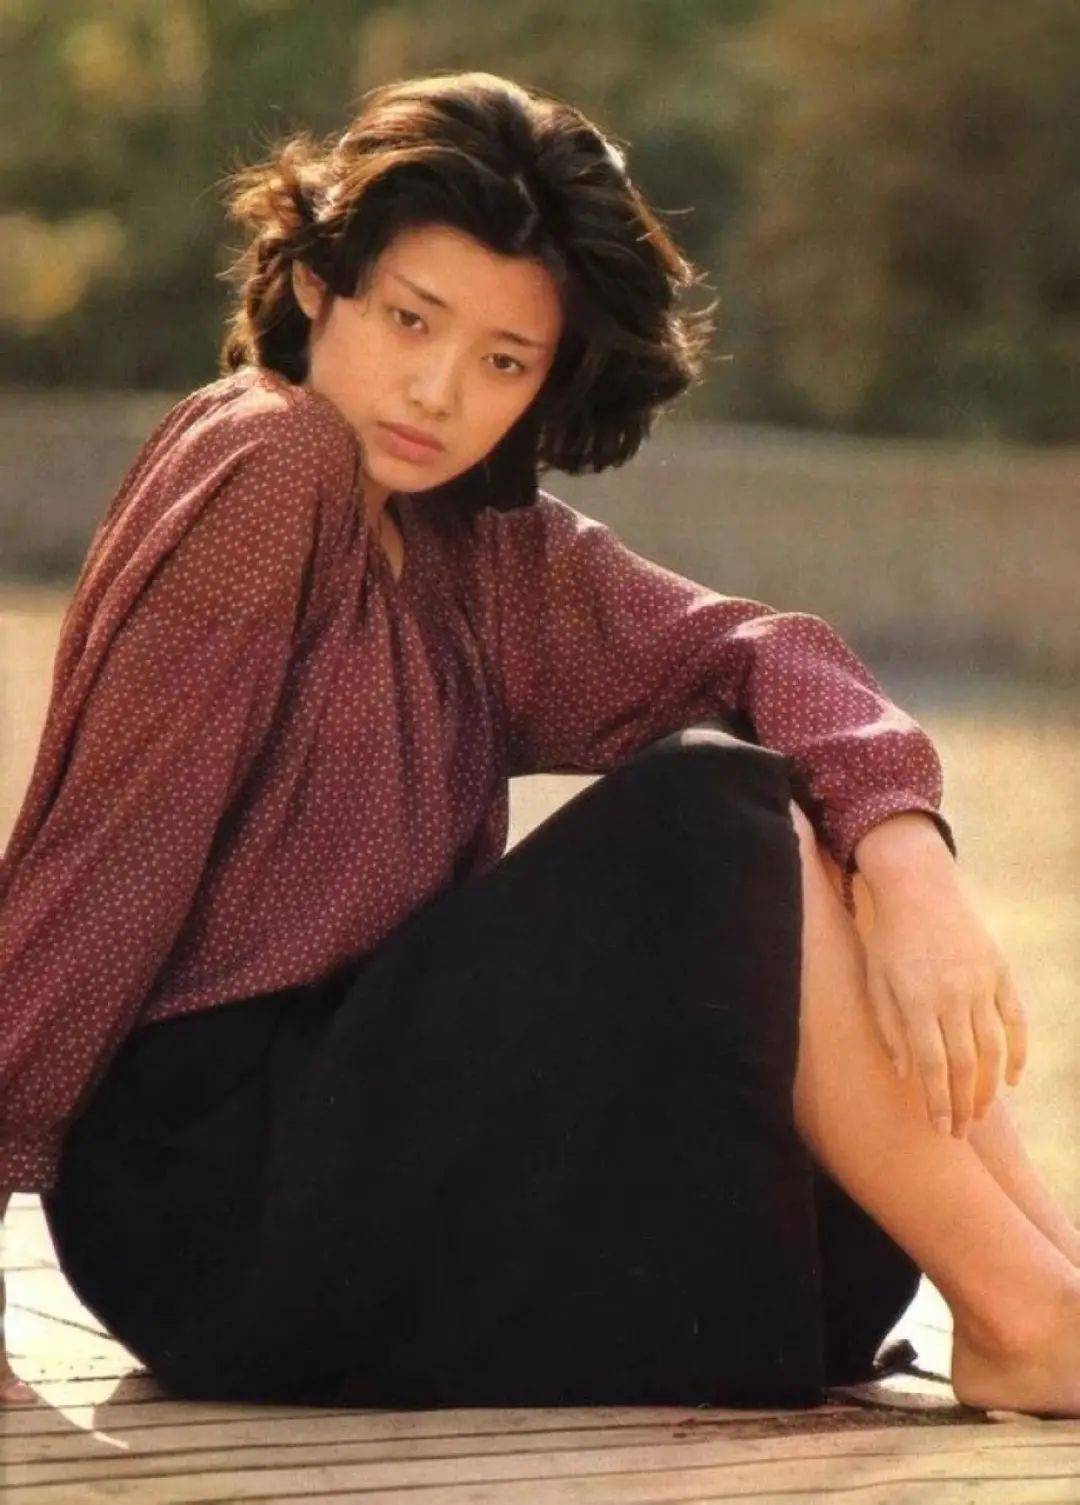 山口百惠是最传统的日式美女,处于"校园少女"时期的她,剪着一头短发